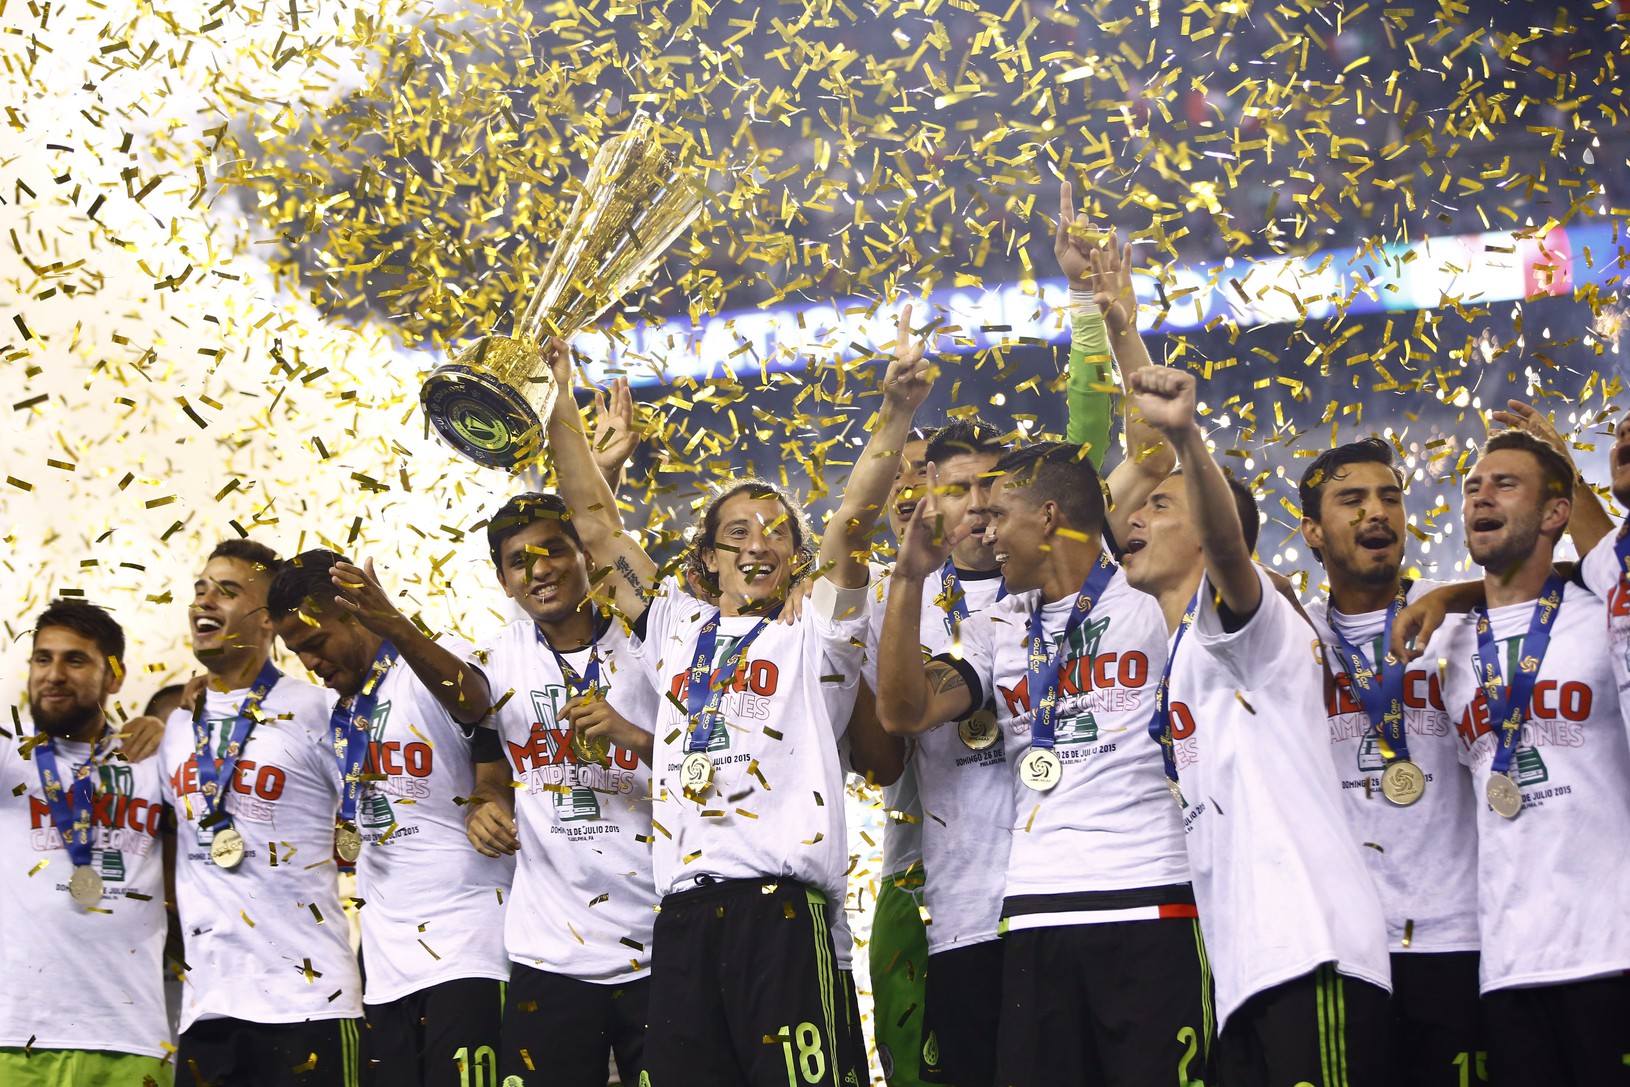 Mexiko získalo siedmy titul